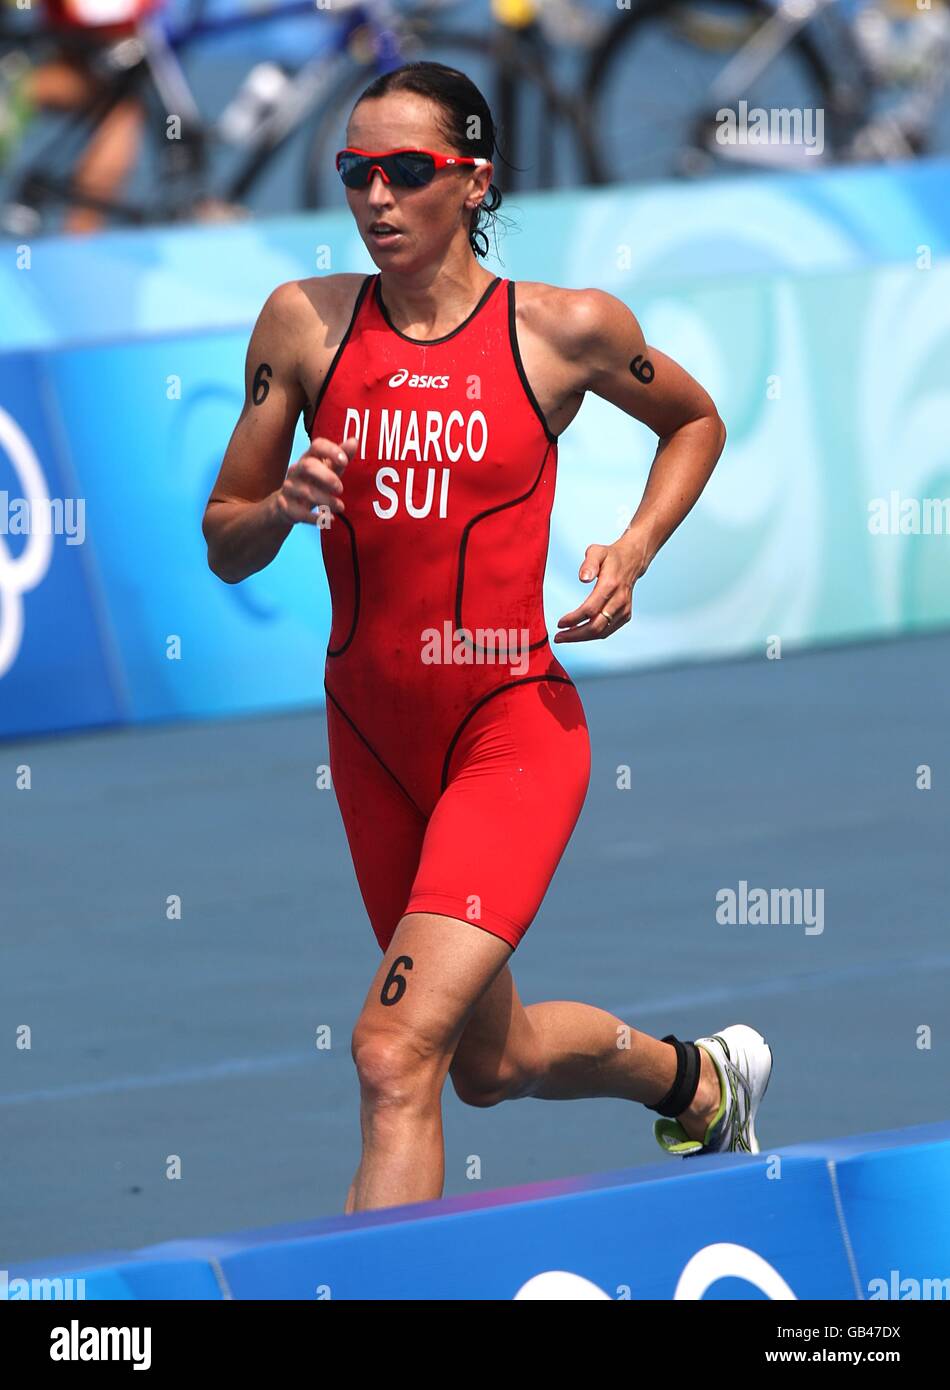 El suizo Magali Di Marco participa en la etapa de carrera del Triatlón Femenino en el embalse de la Tumba Ming en el distrito Changping del norte de Beijing el día 10 de los Juegos Olímpicos de 2008 en Beijing. Foto de stock